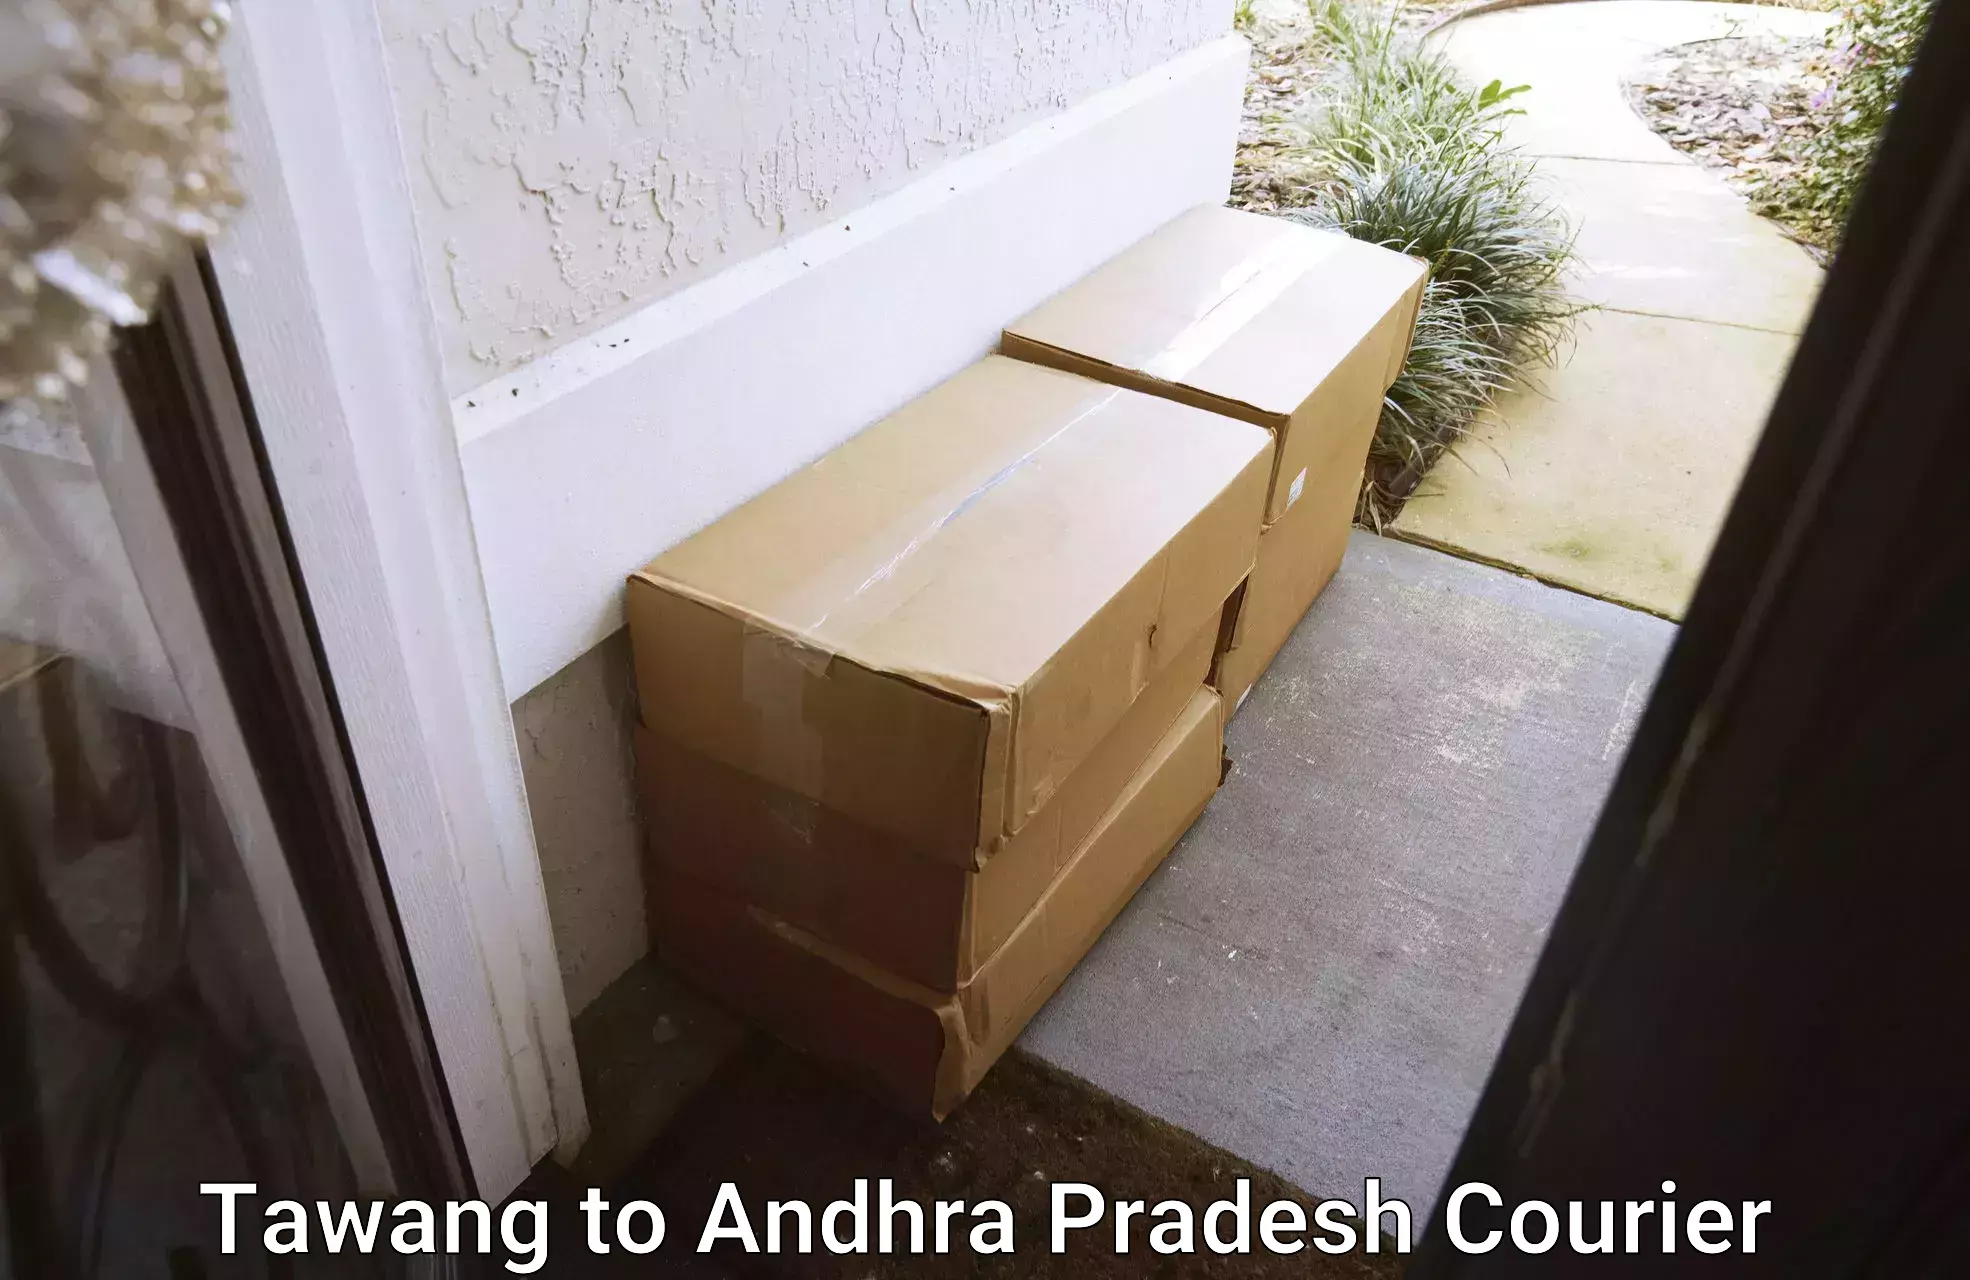 Efficient parcel tracking Tawang to Chitrada